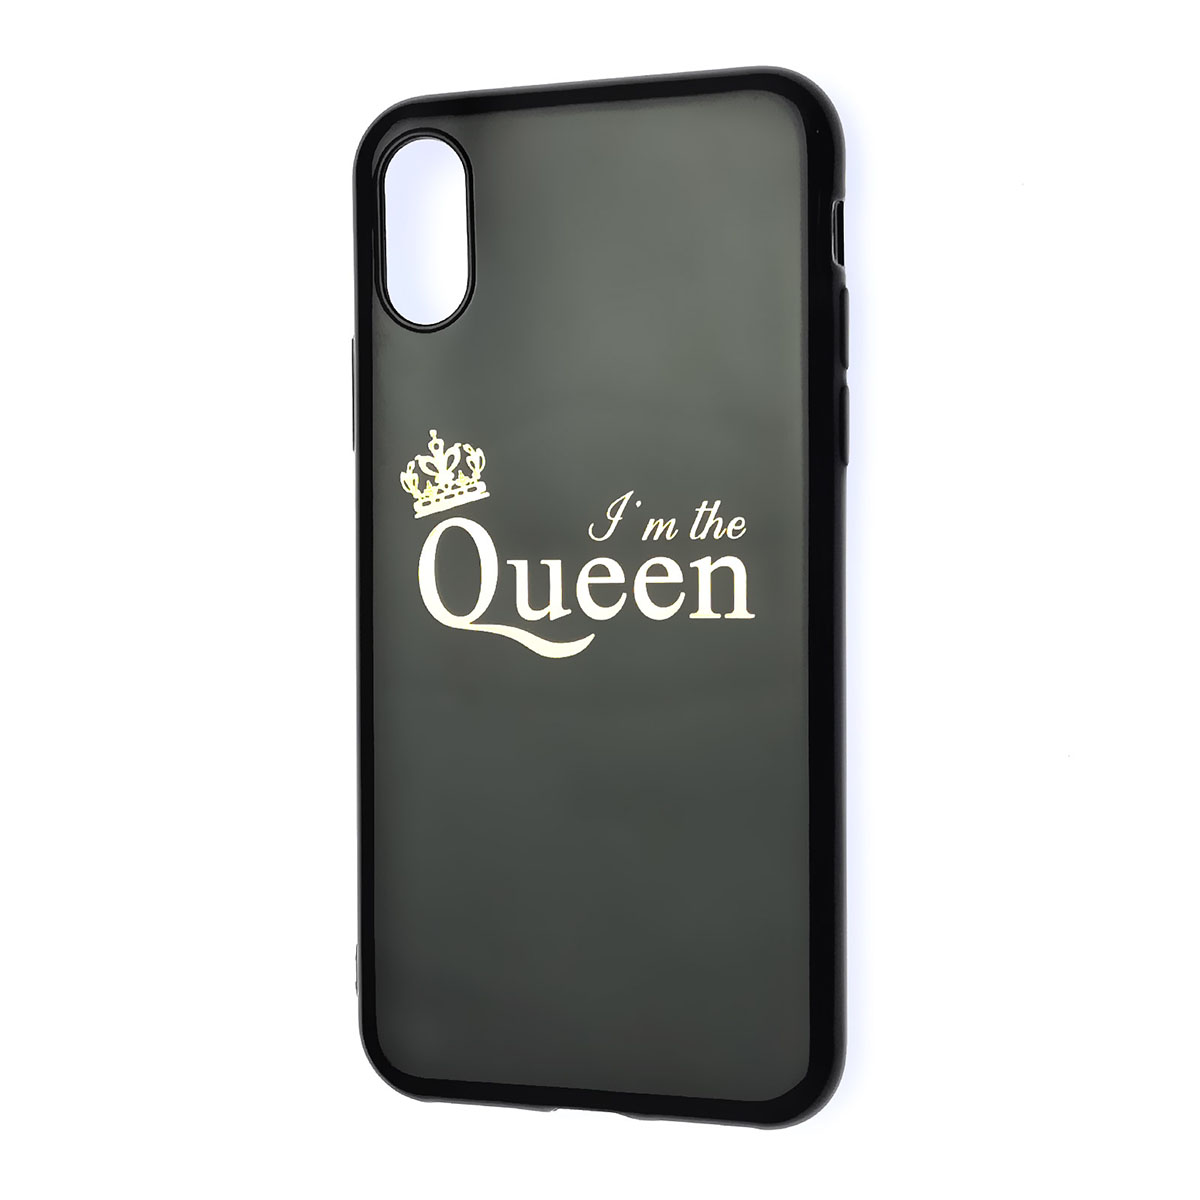 Чехол накладка для APPLE iPhone X, iPhone XS, силикон, глянцевый, рисунок Queen, цвет черный.